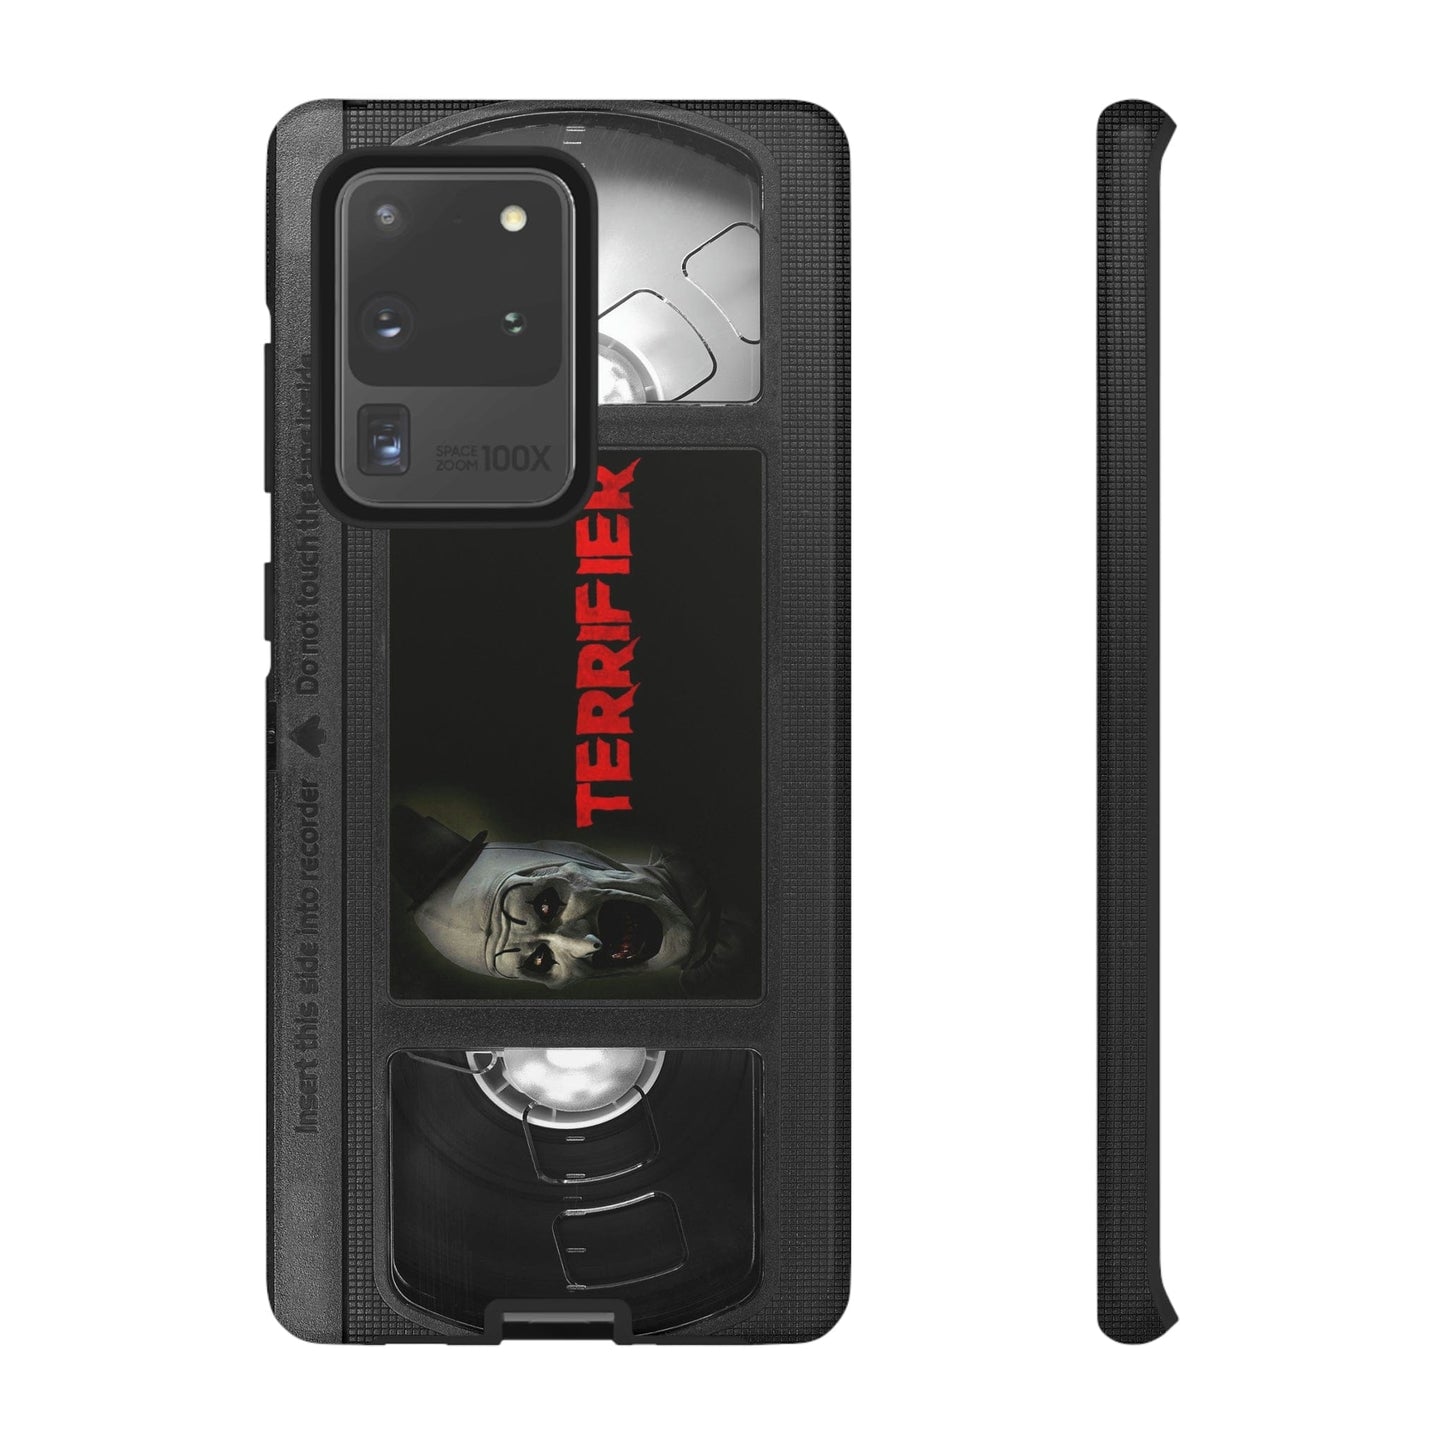 Art Clown Impact Resistant VHS Phone Case